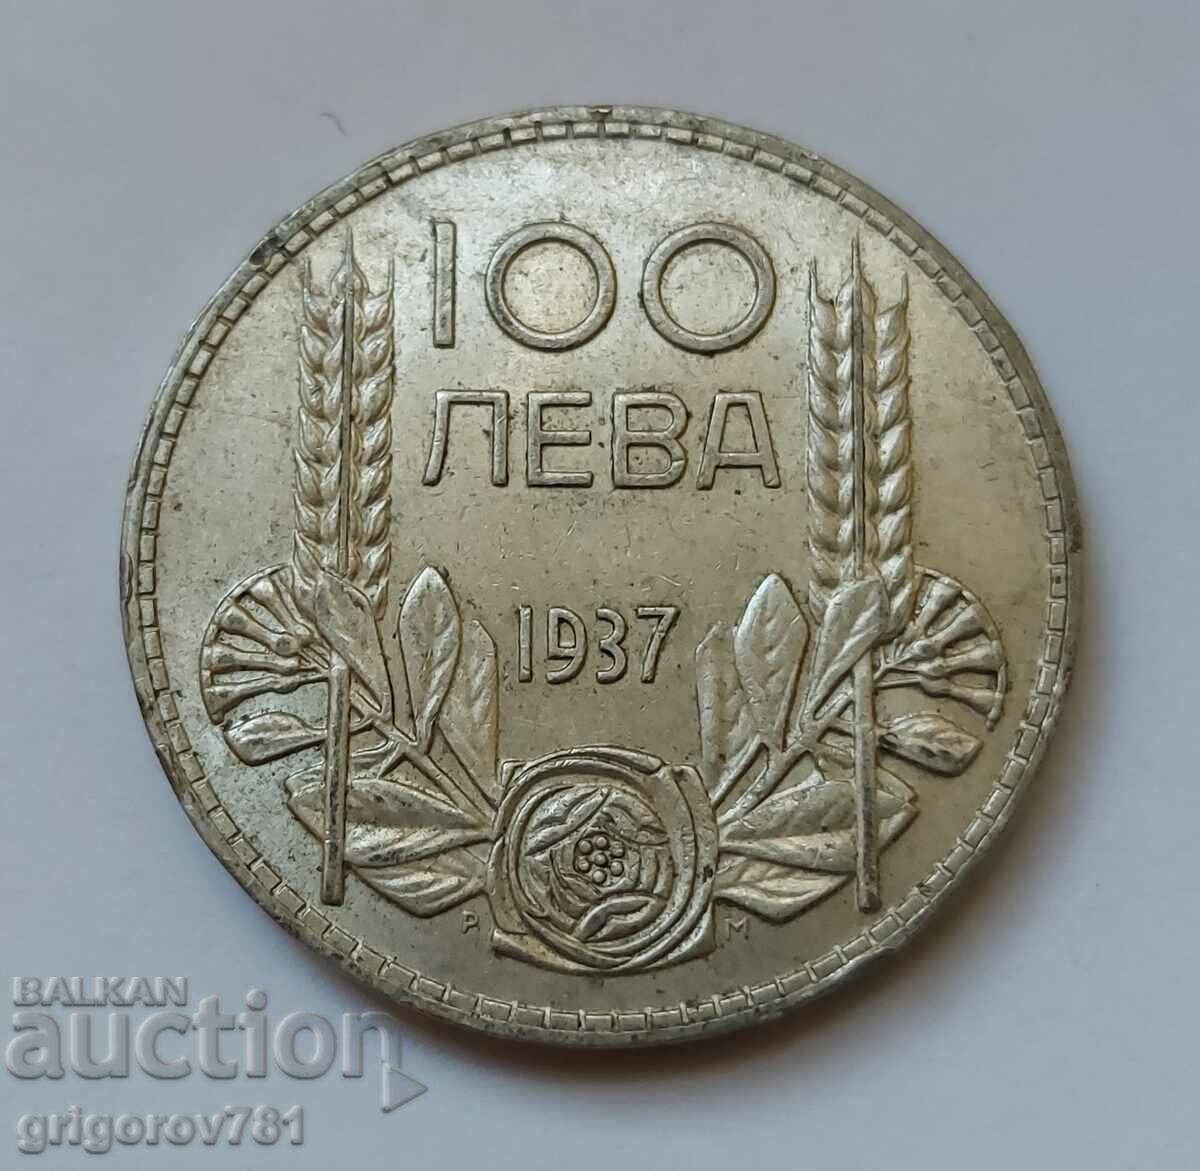 100 leva argint Bulgaria 1937 - monedă de argint #83